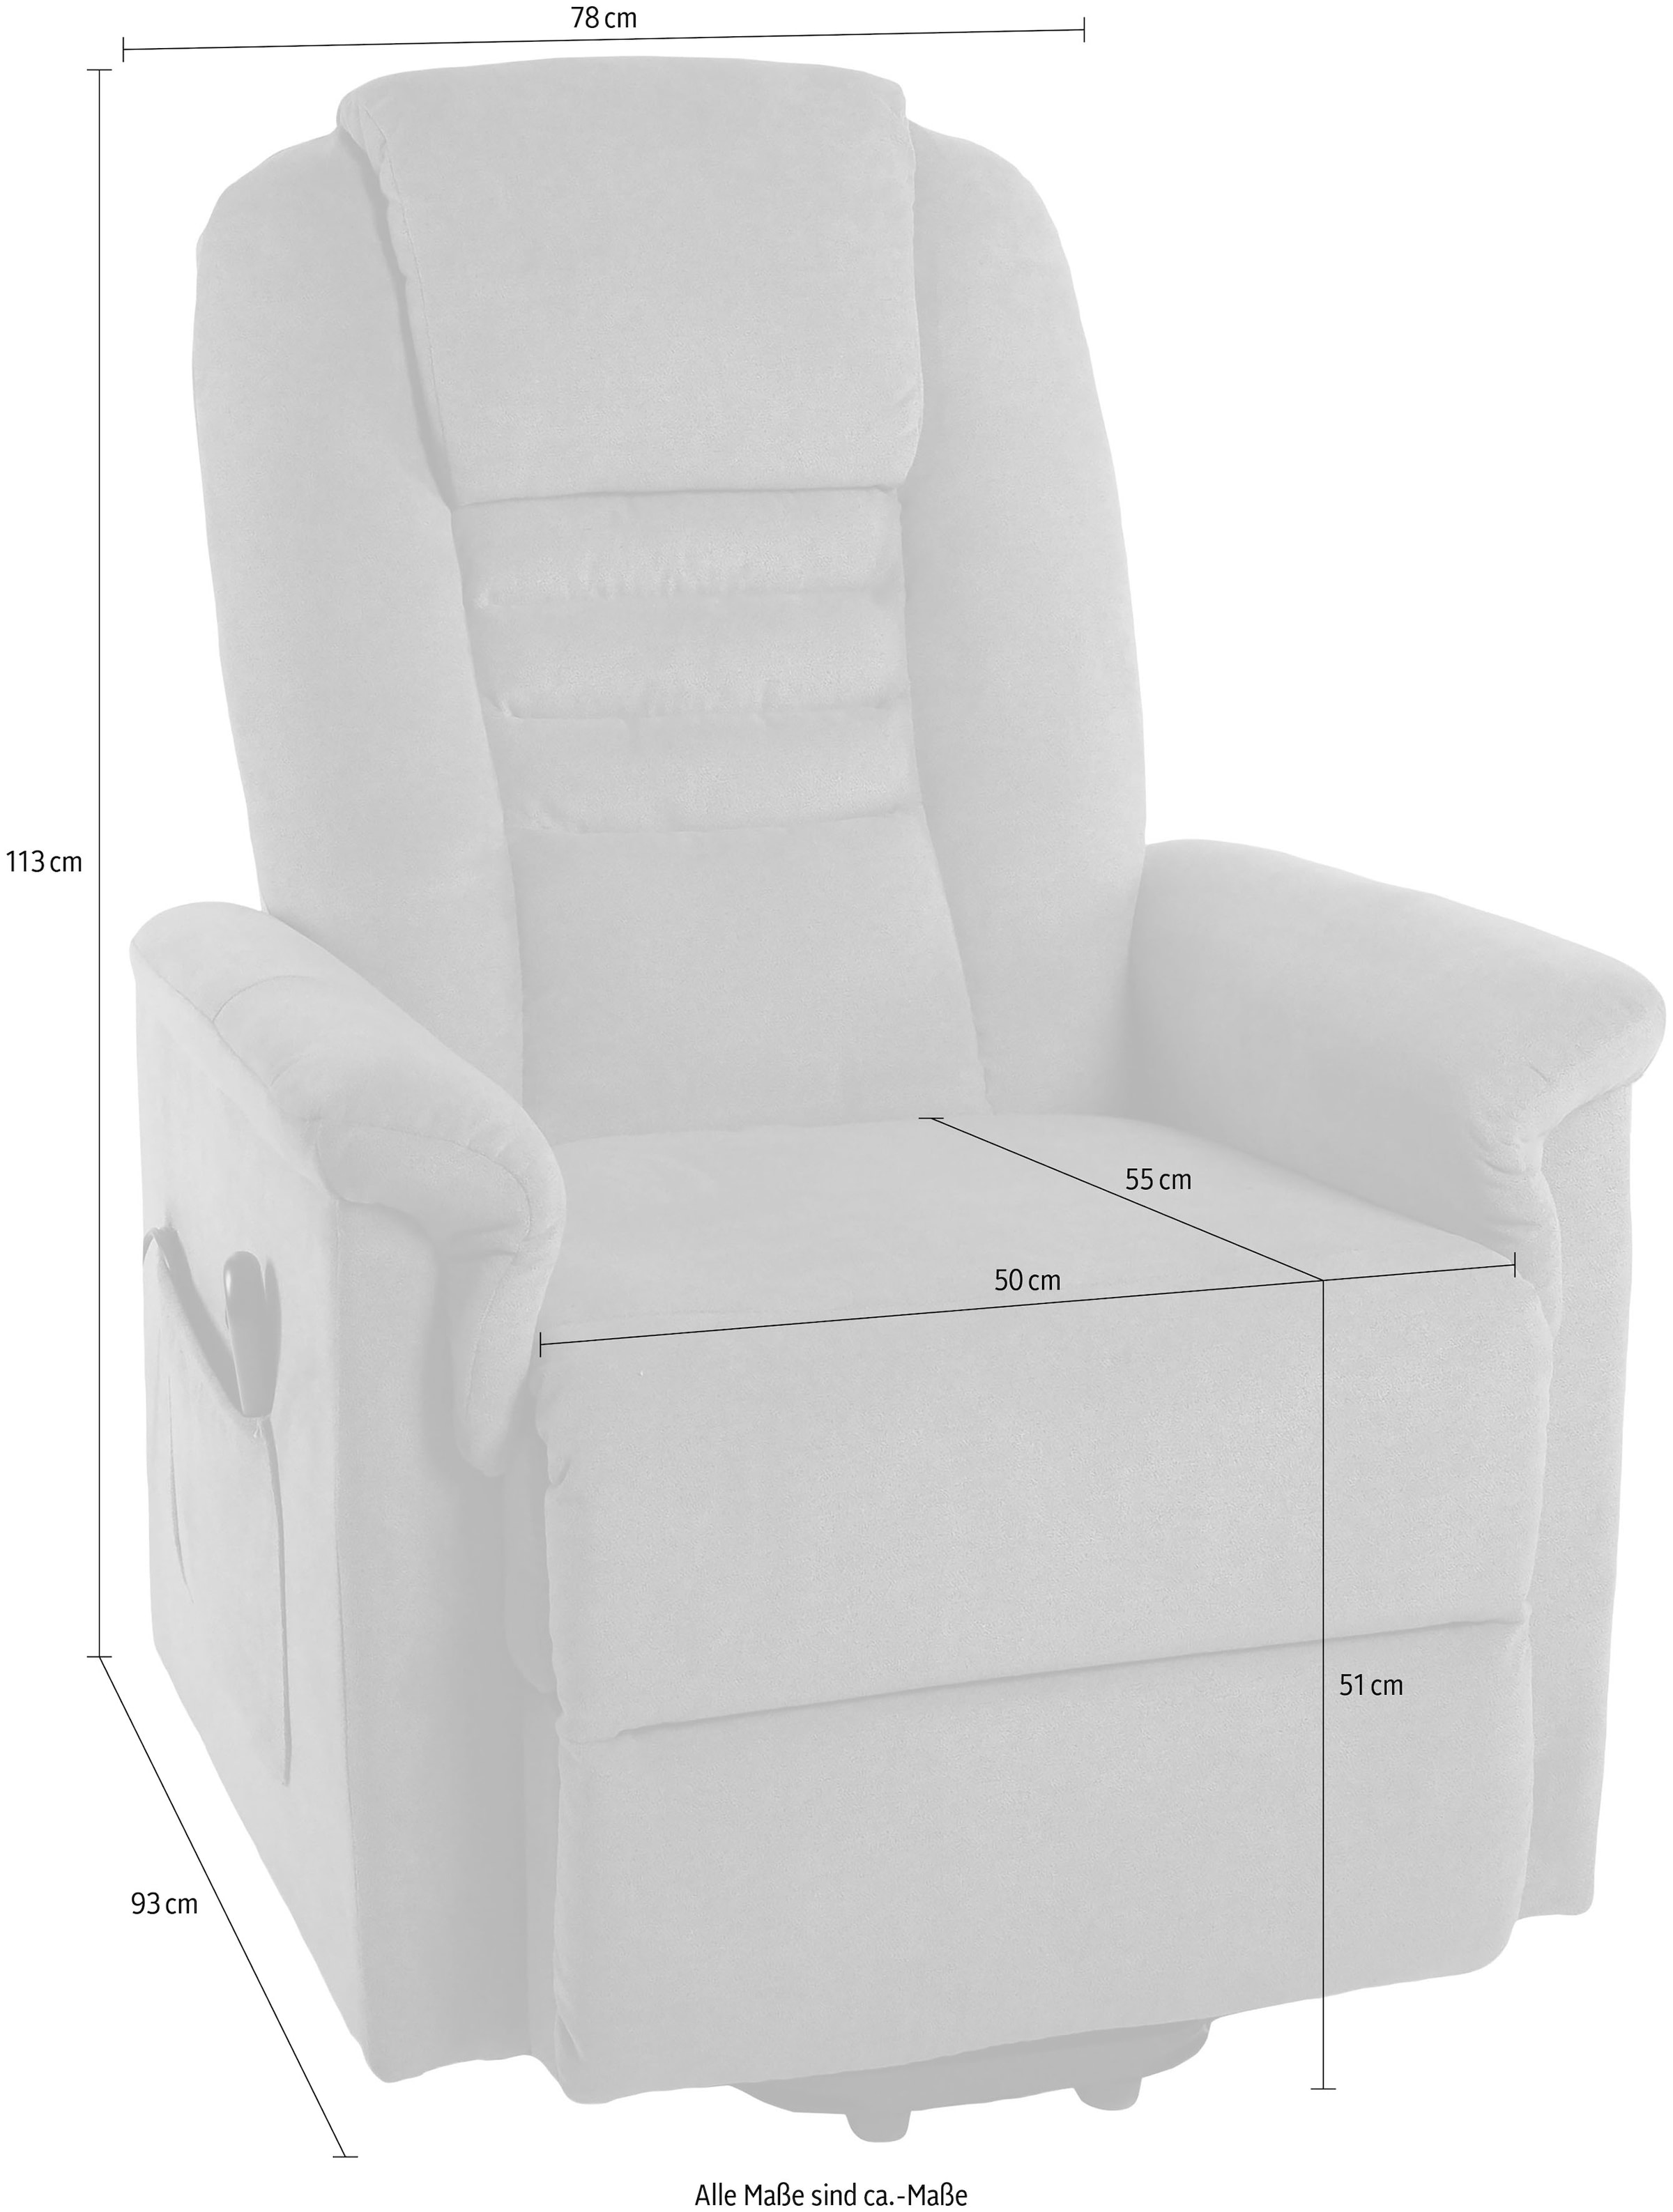 Duo Collection TV-Sessel »Granada mit elektrischer Aufstehhilfe«, Relaxfunktion und Taschenfederkern mit Stahlwellenunterfederung